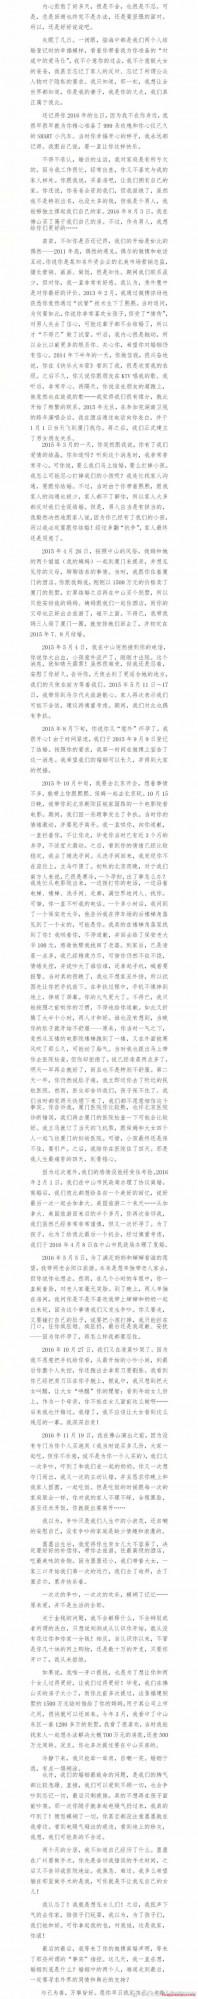 >刘洲成长文回应 微博原文全文曝光图片竟是拼接的